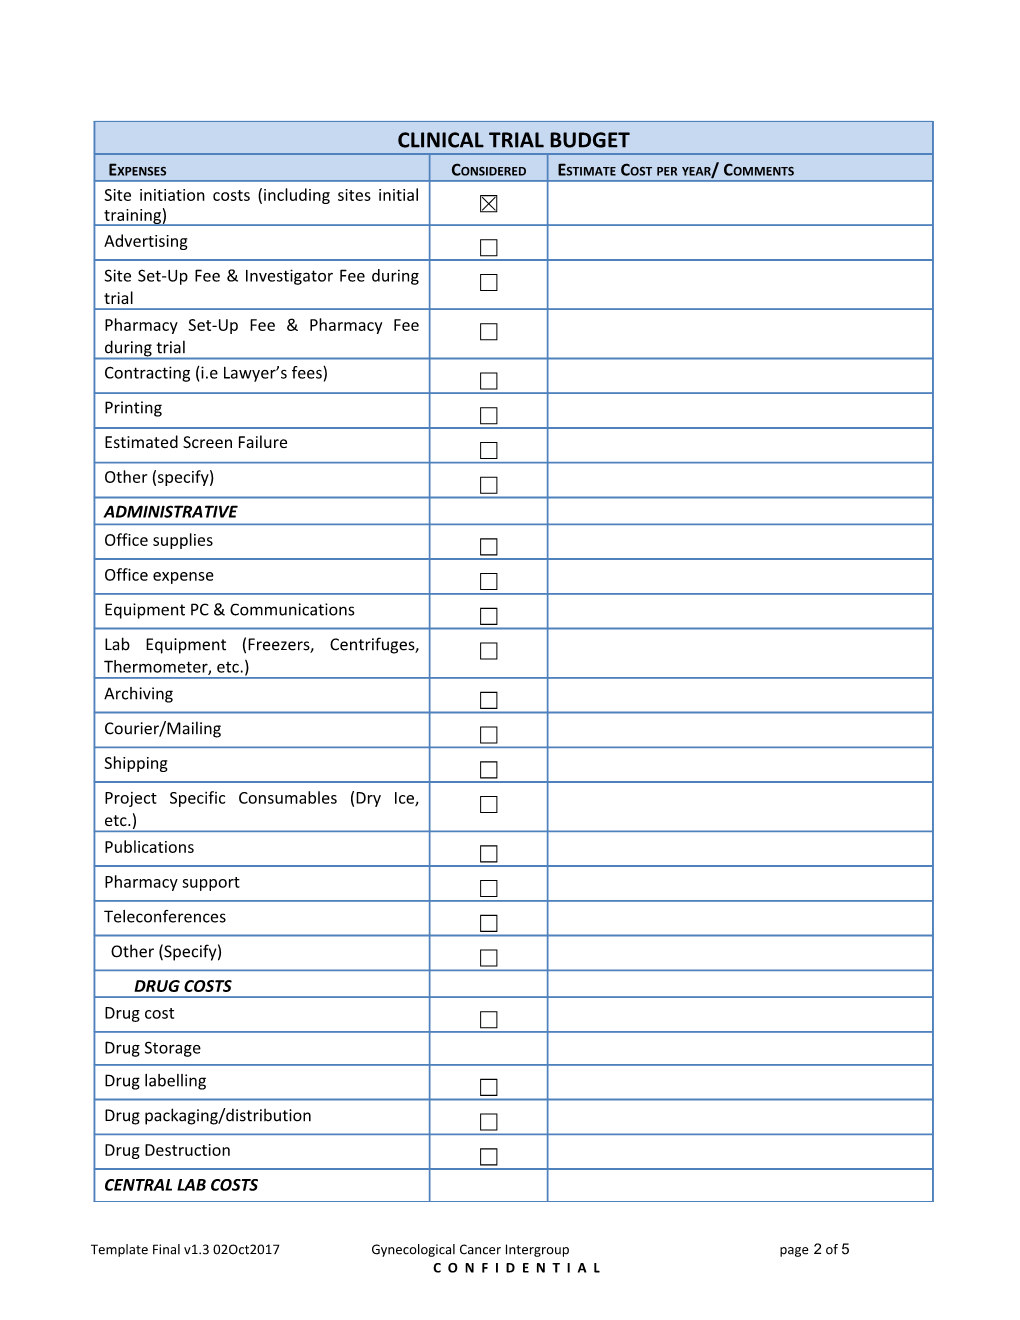 Checklist for a GCIG Clinical Trial Budget